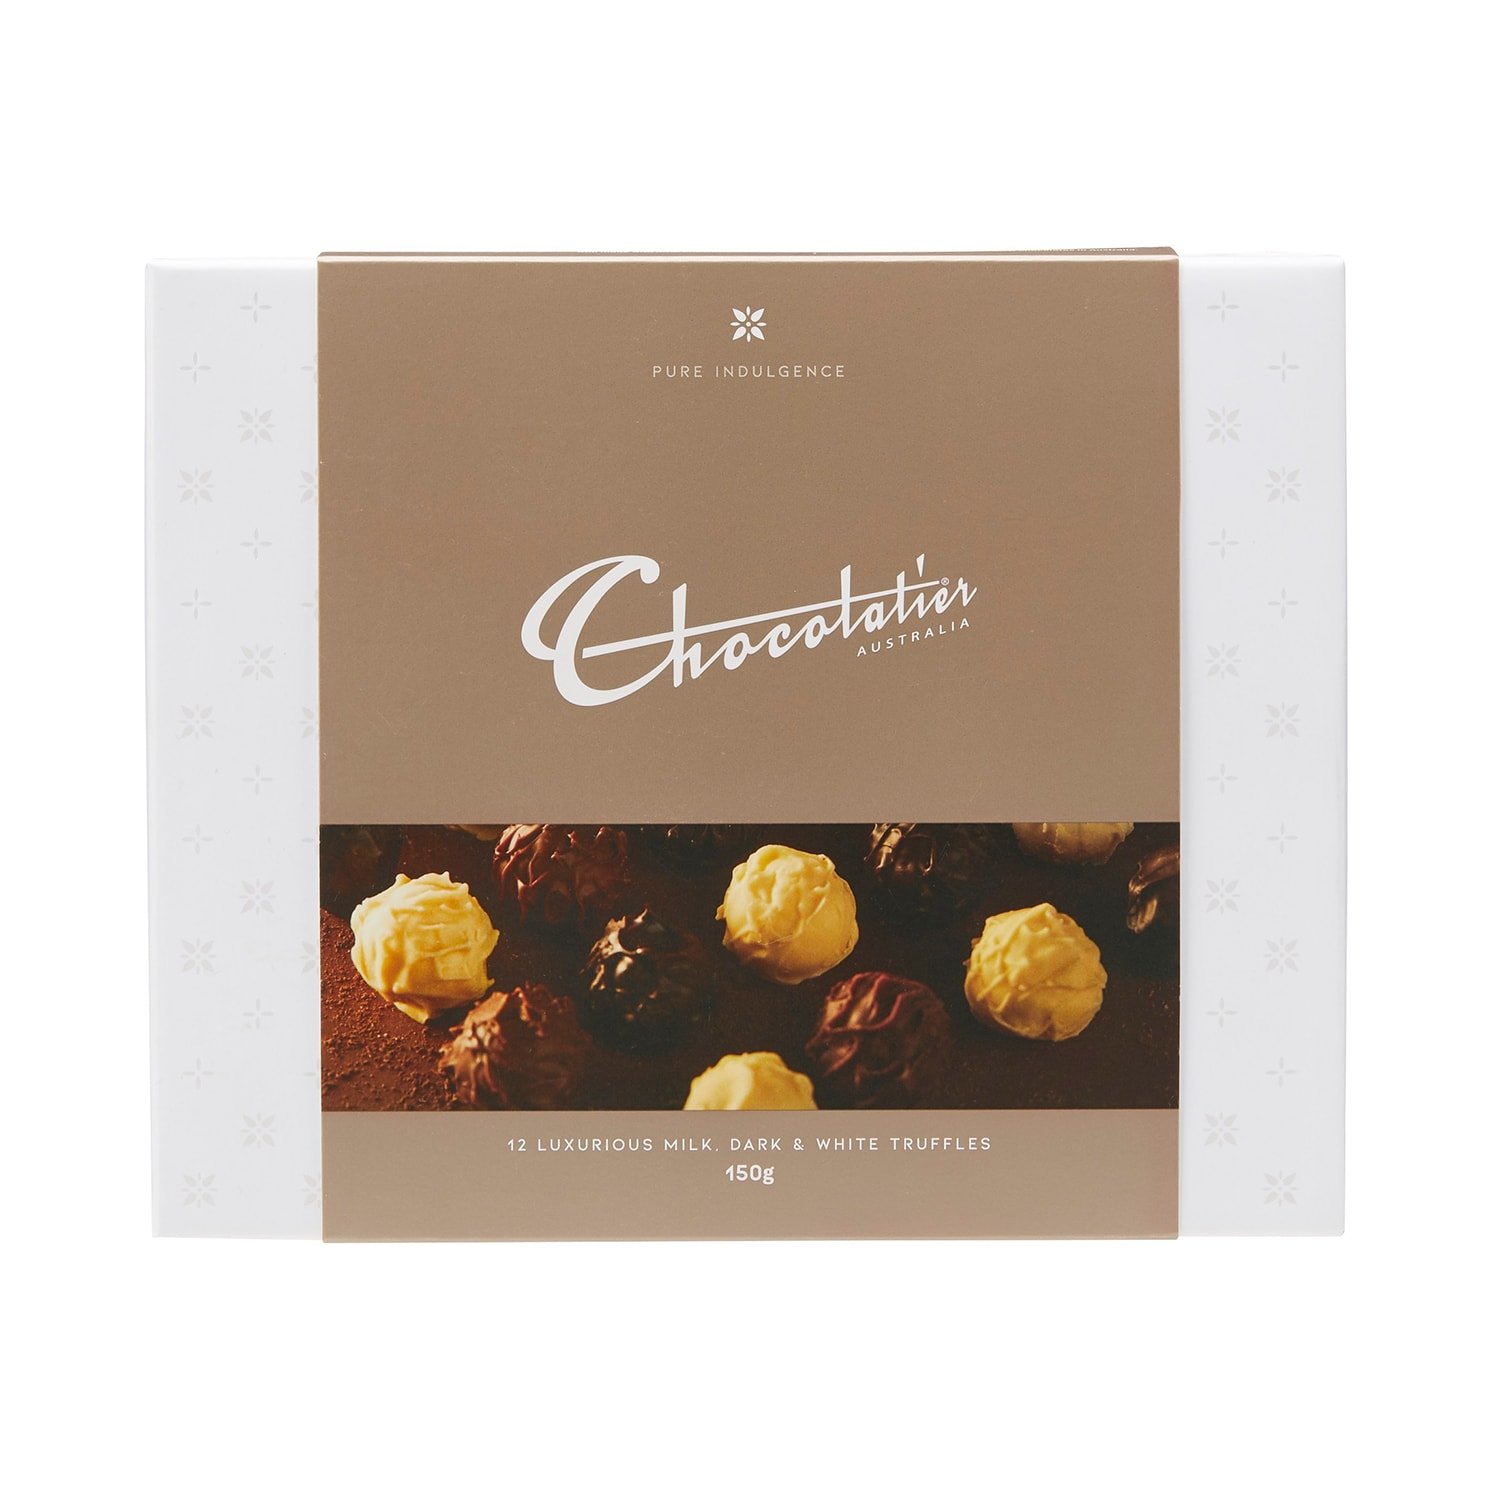 RB0198-Chocolatier-AustraliaPure-Indulgence-Truffle-Chocolate-Assortment-150g-1500-RGB-F.jpg